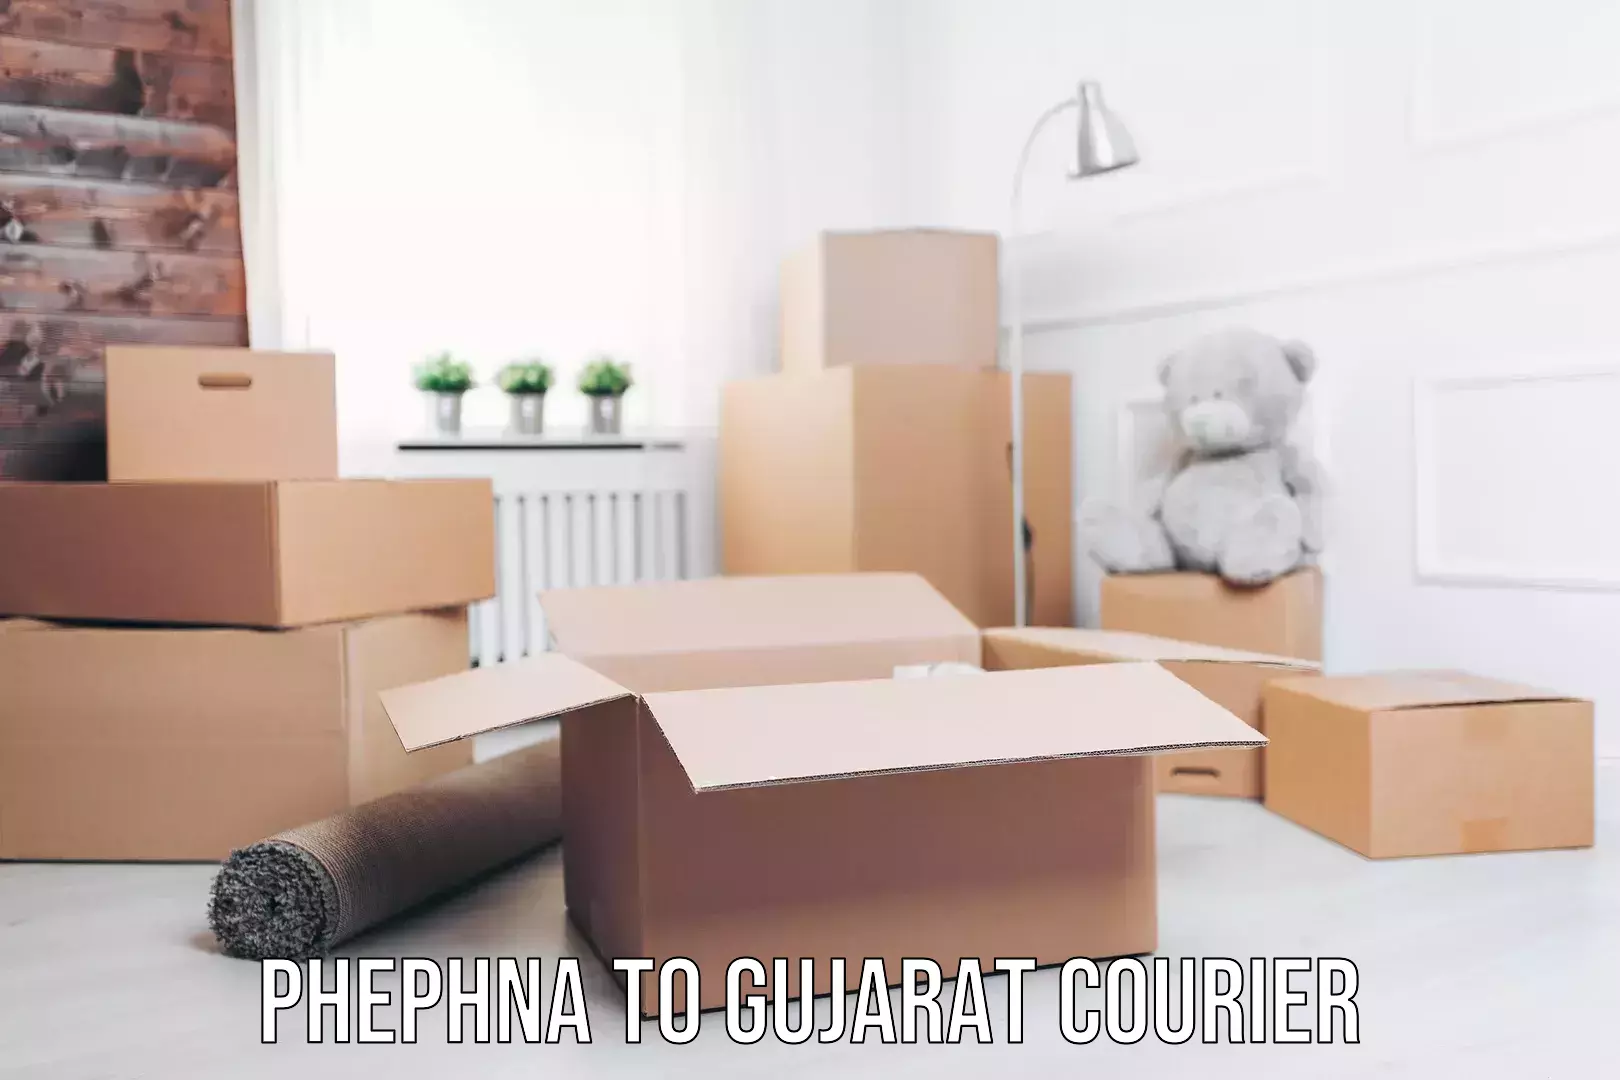 Efficient furniture movers in Phephna to Gujarat